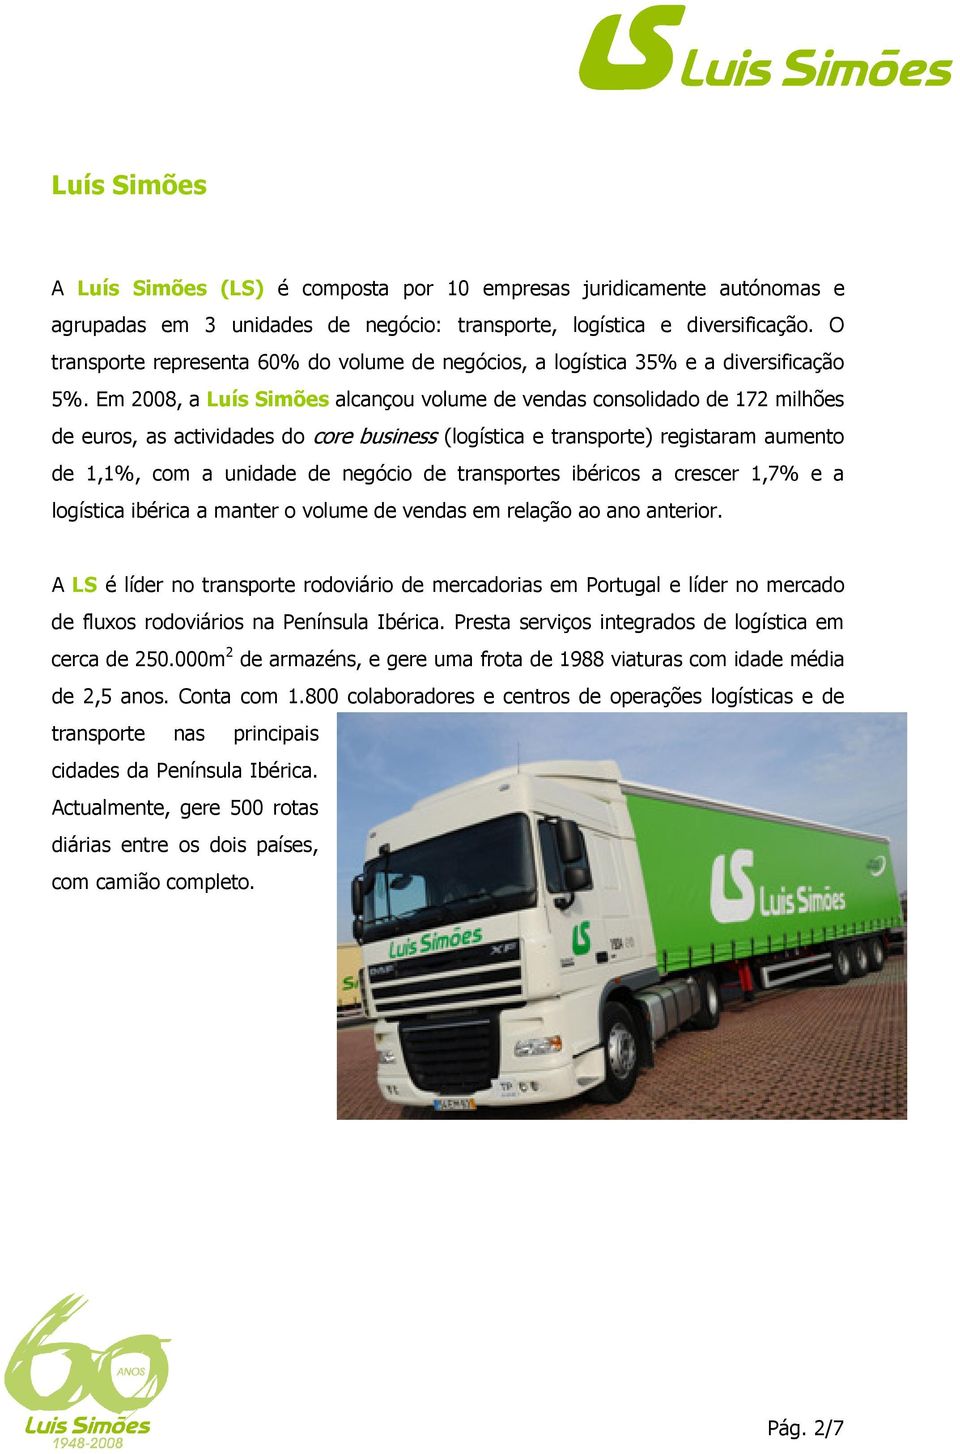 Em 2008, a Luís Simões alcançou volume de vendas consolidado de 172 milhões de euros, as actividades do core business (logística e transporte) registaram aumento de 1,1%, com a unidade de negócio de